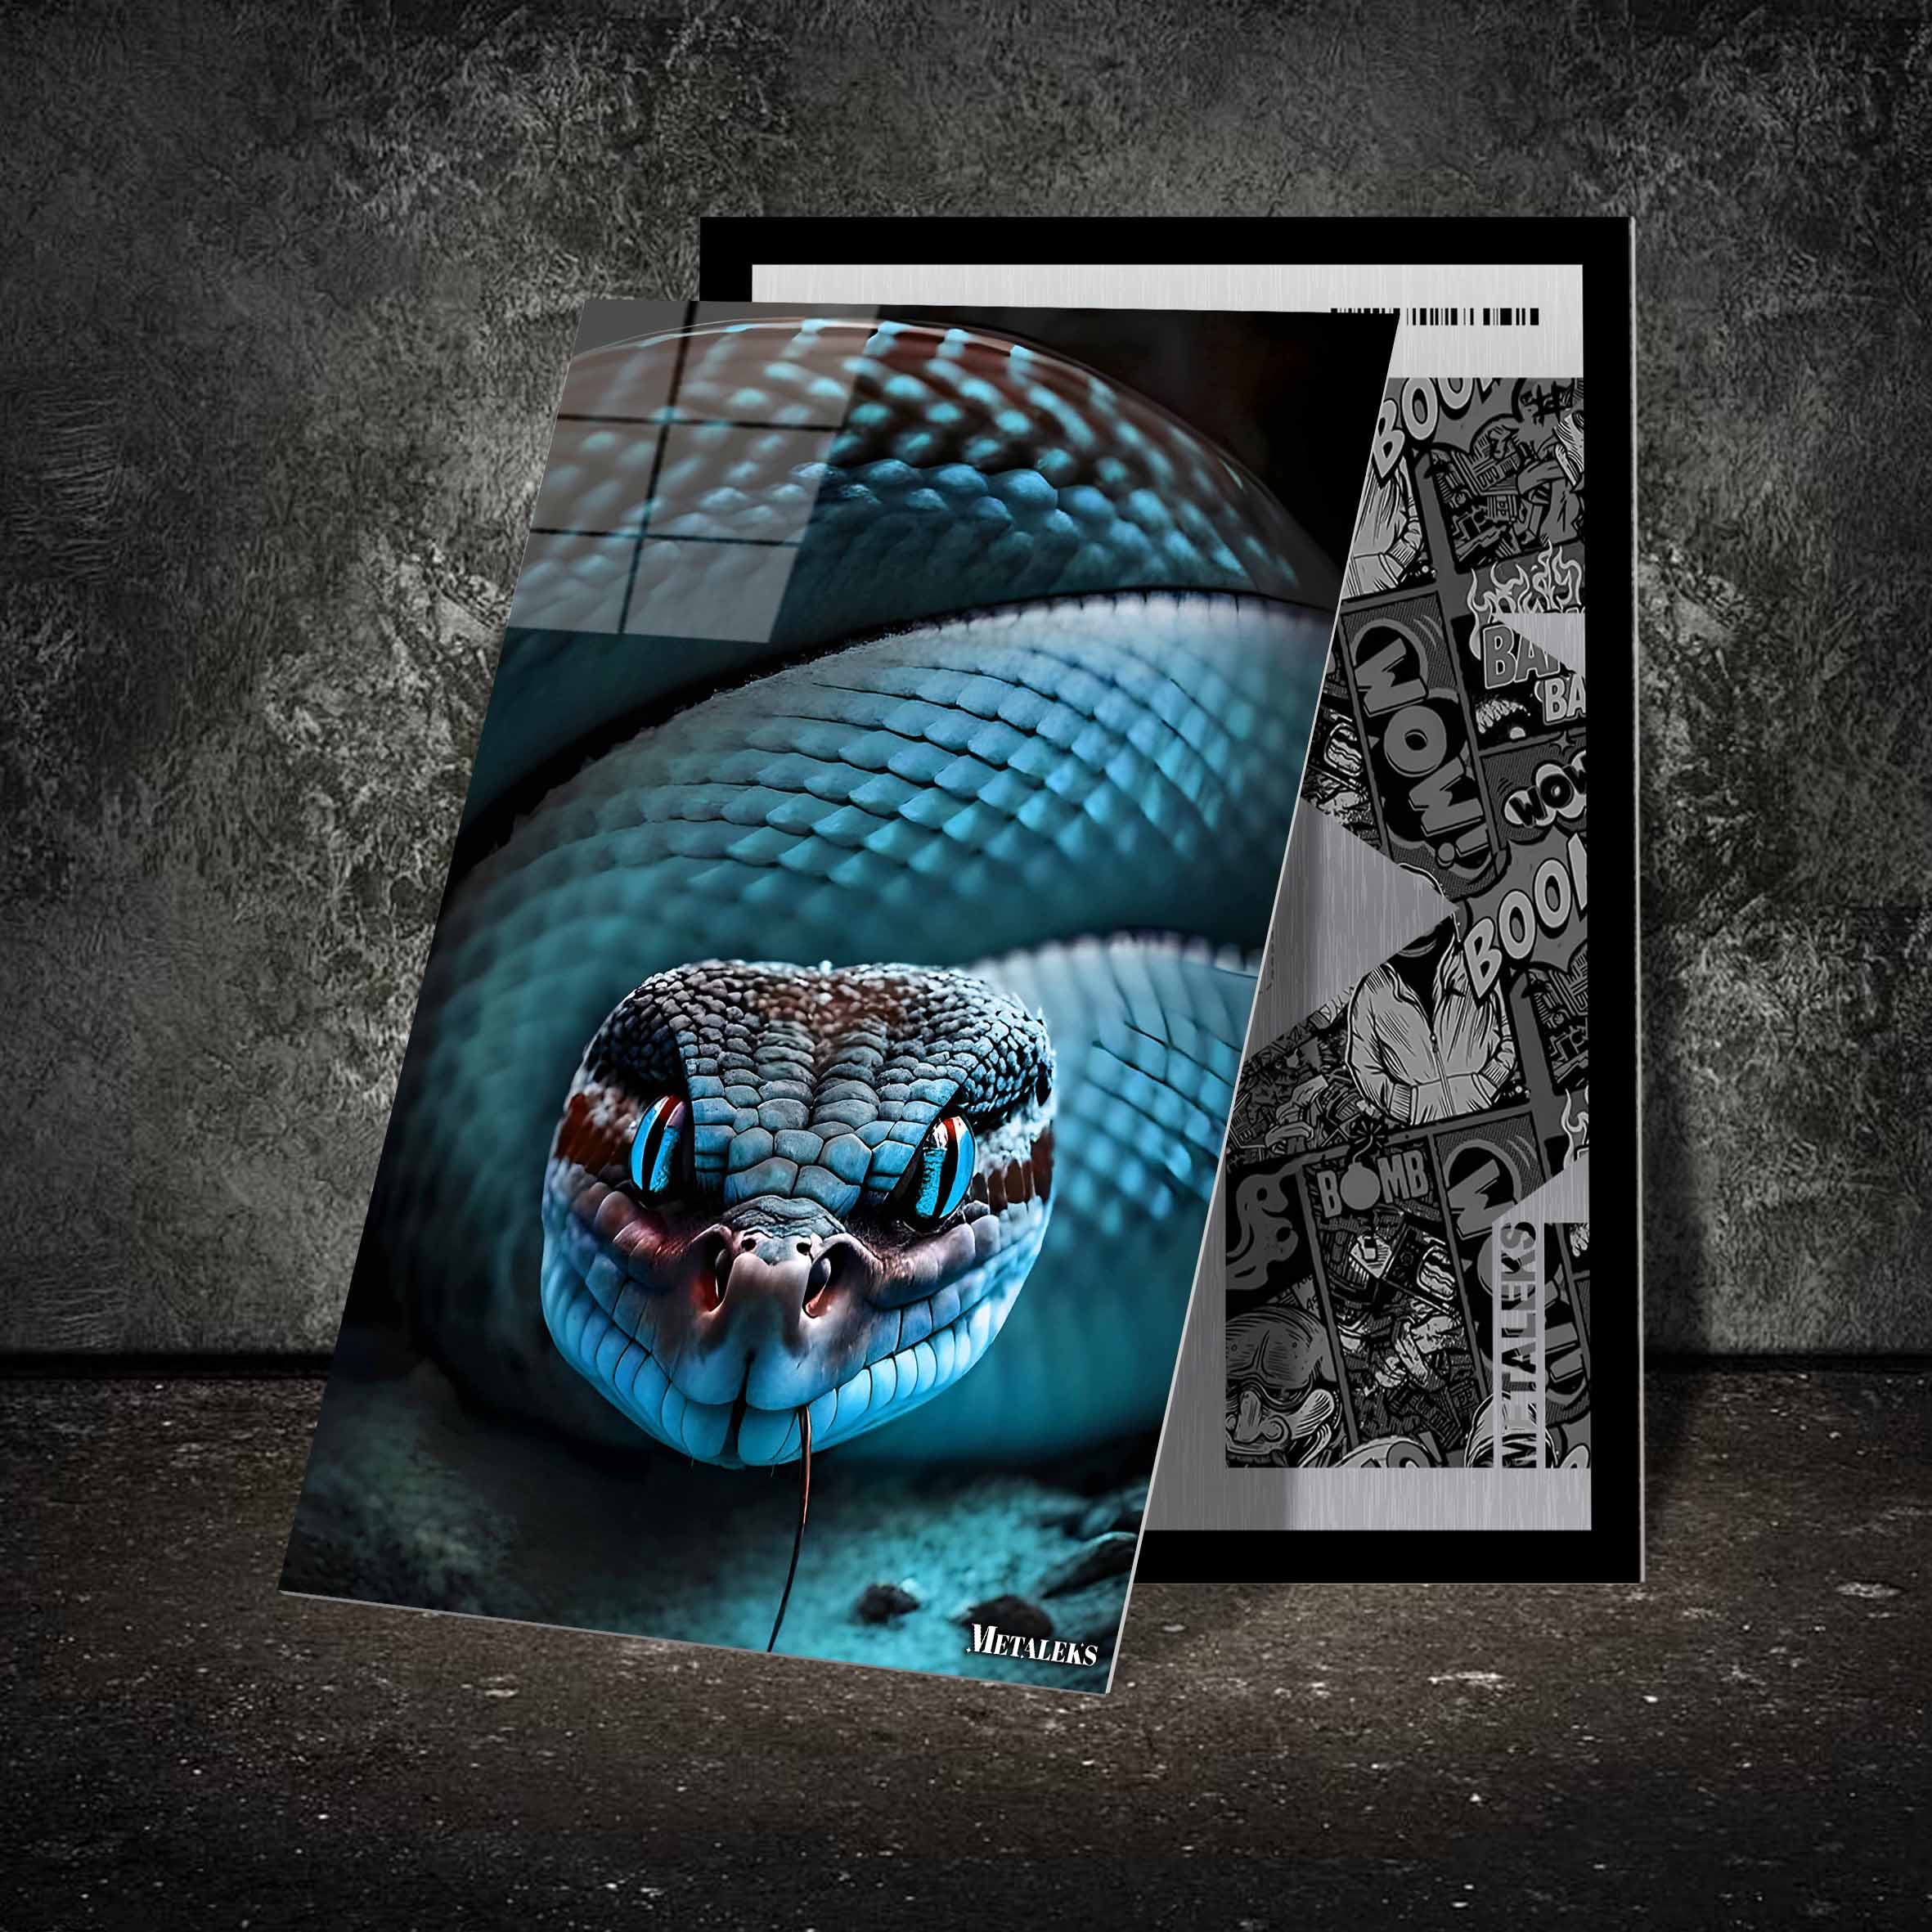 blue rattlesnake-designed by @Beat art